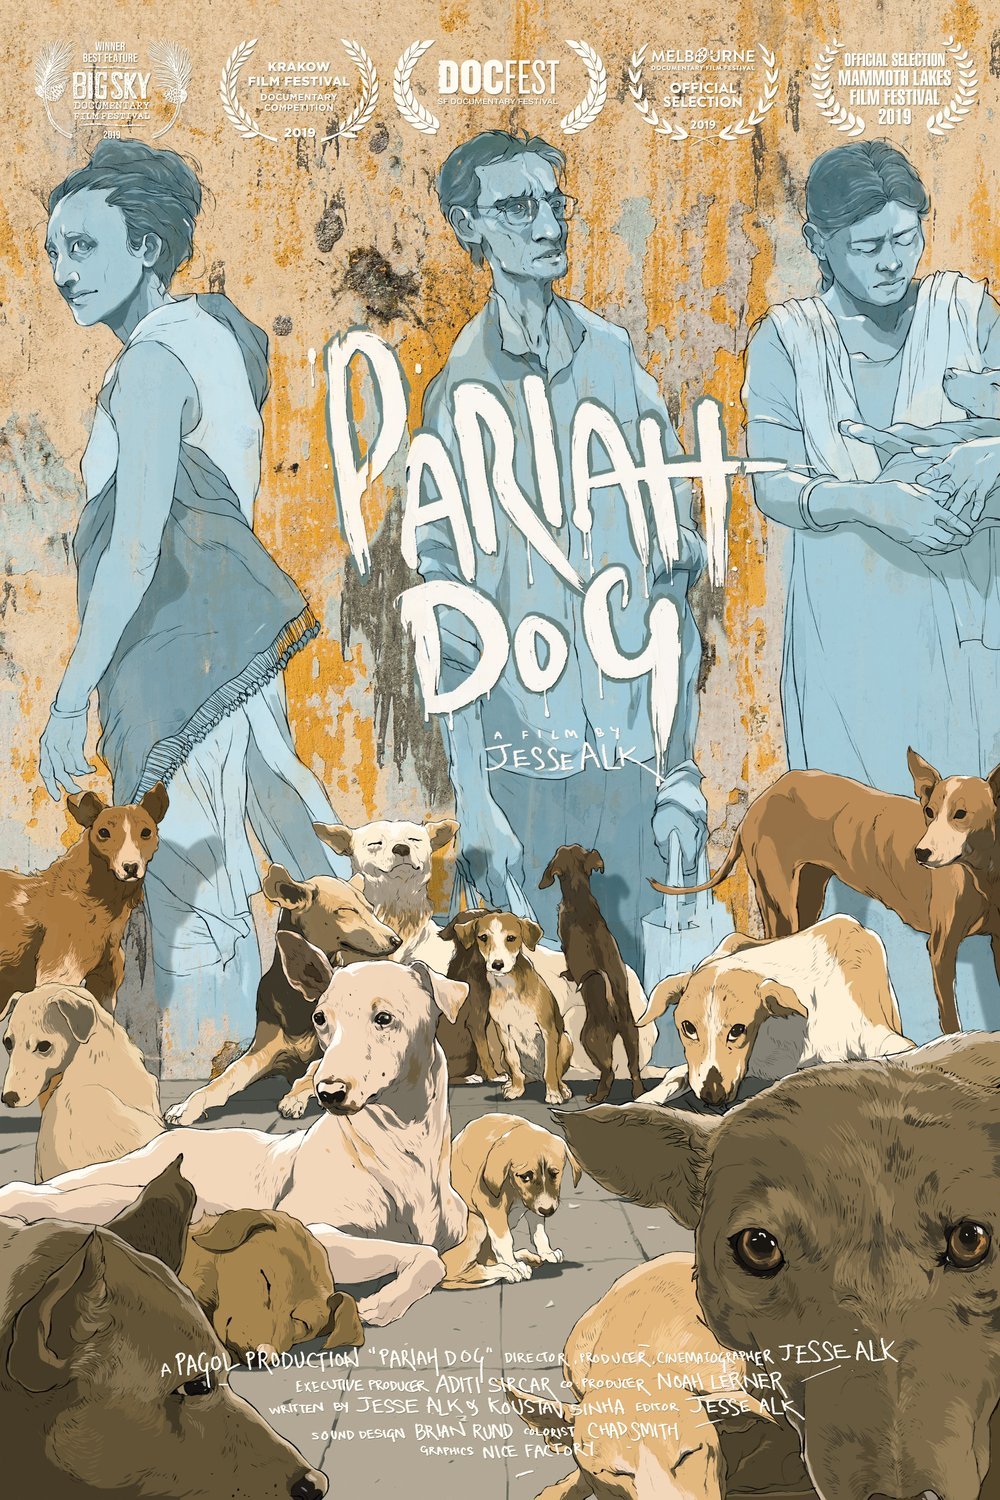 L'affiche du film Pariah Dog